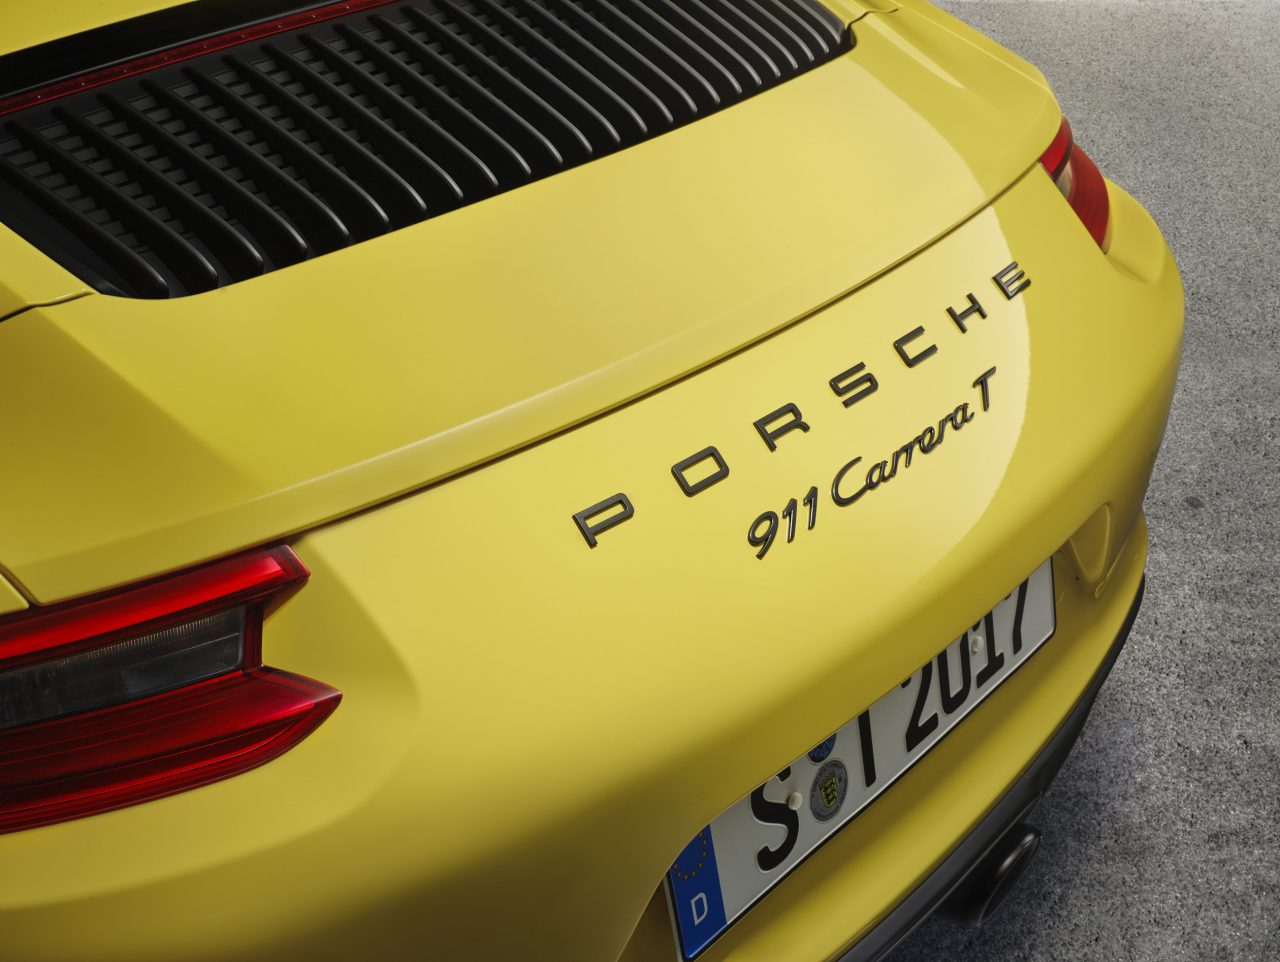 CARRO: Porsche 911 Carrera T chega ao Brasil - Revista Mensch